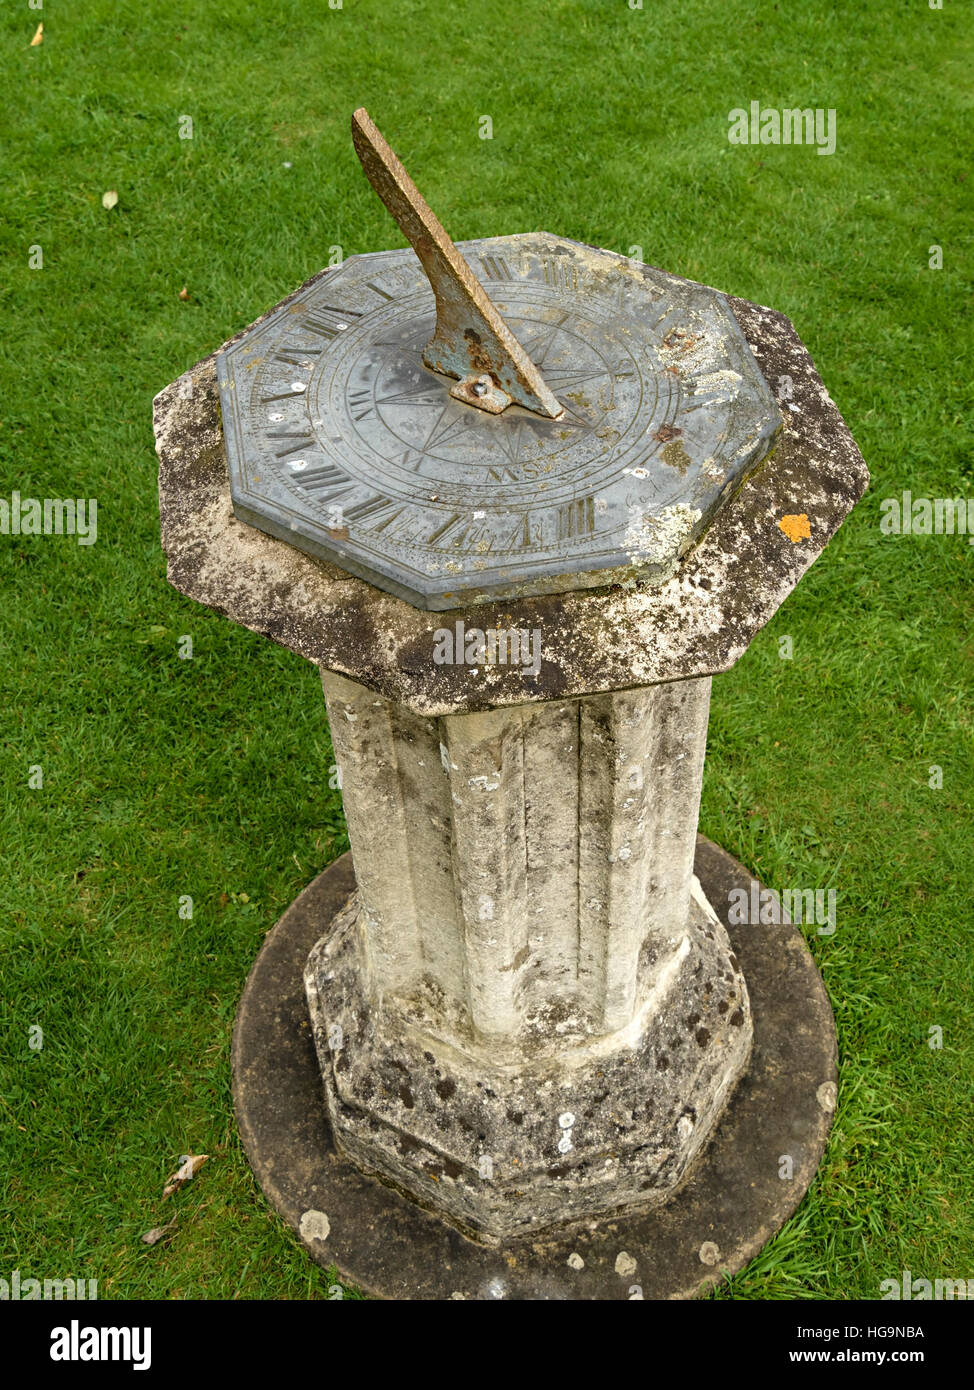 Vecchia meridiana da giardino con piedistallo con numeri romani incisi, Regno Unito. Foto Stock